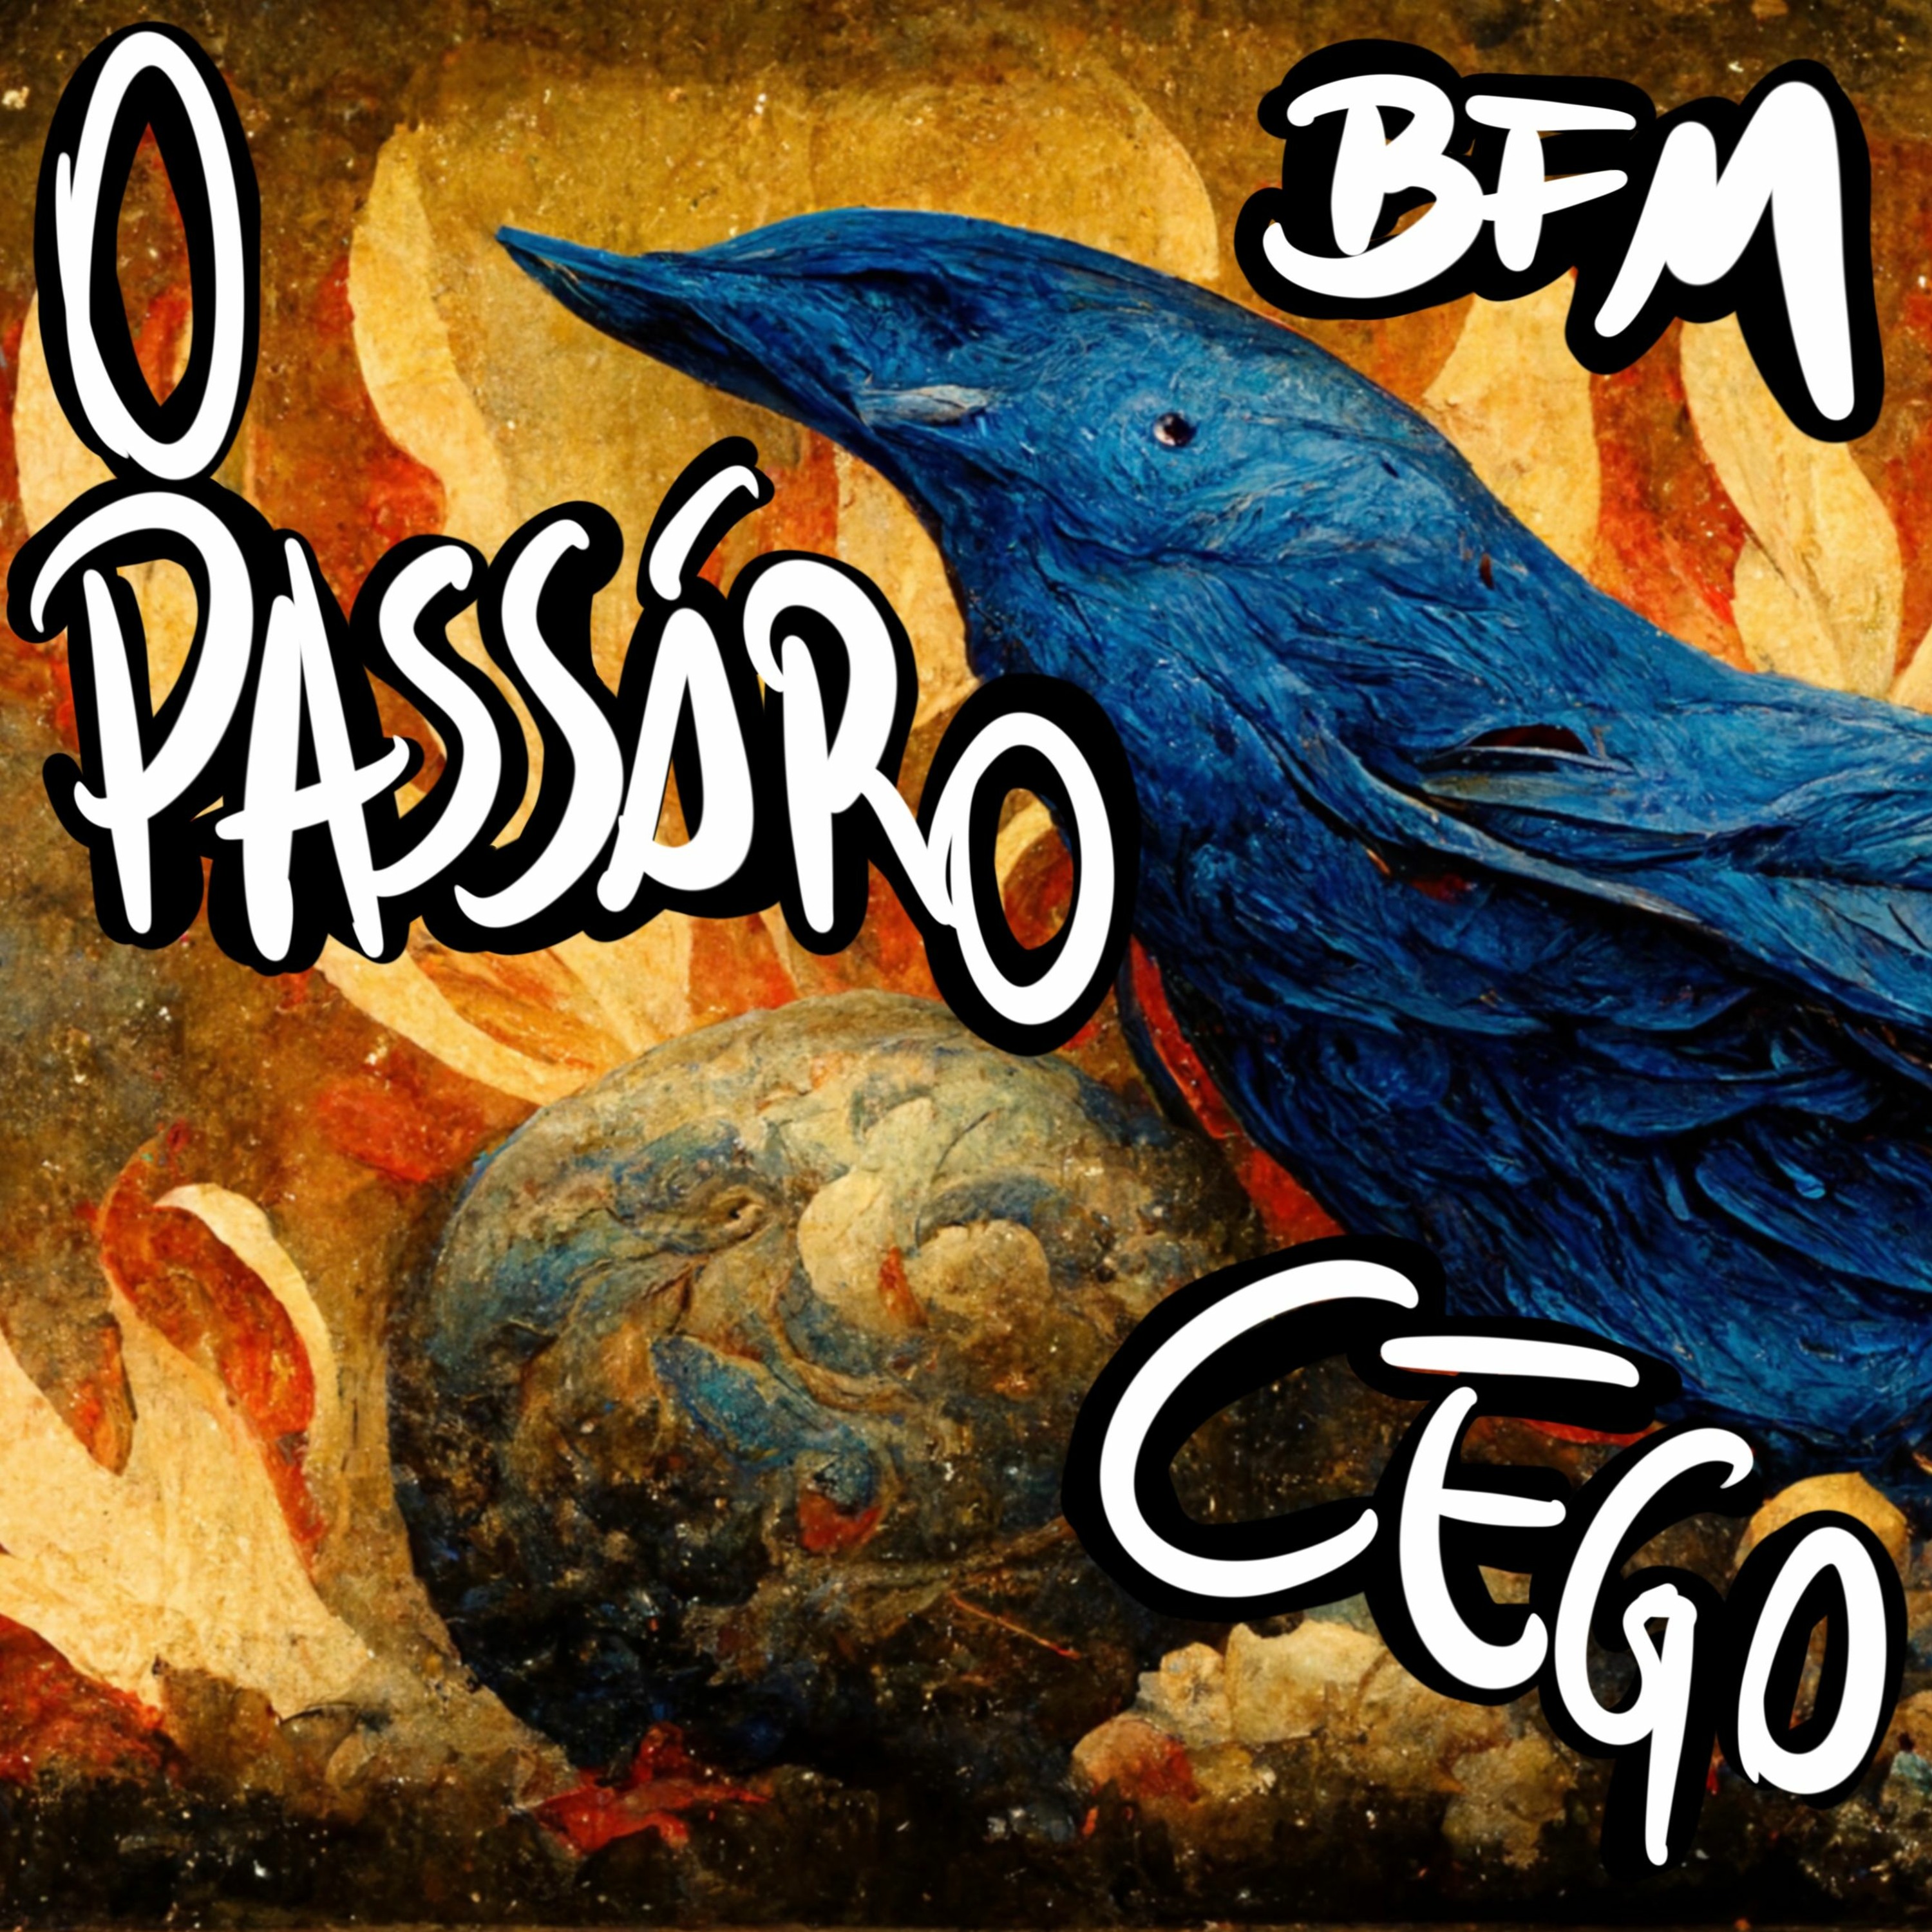 BFM - 18/11/22 - O Pássaro Cego